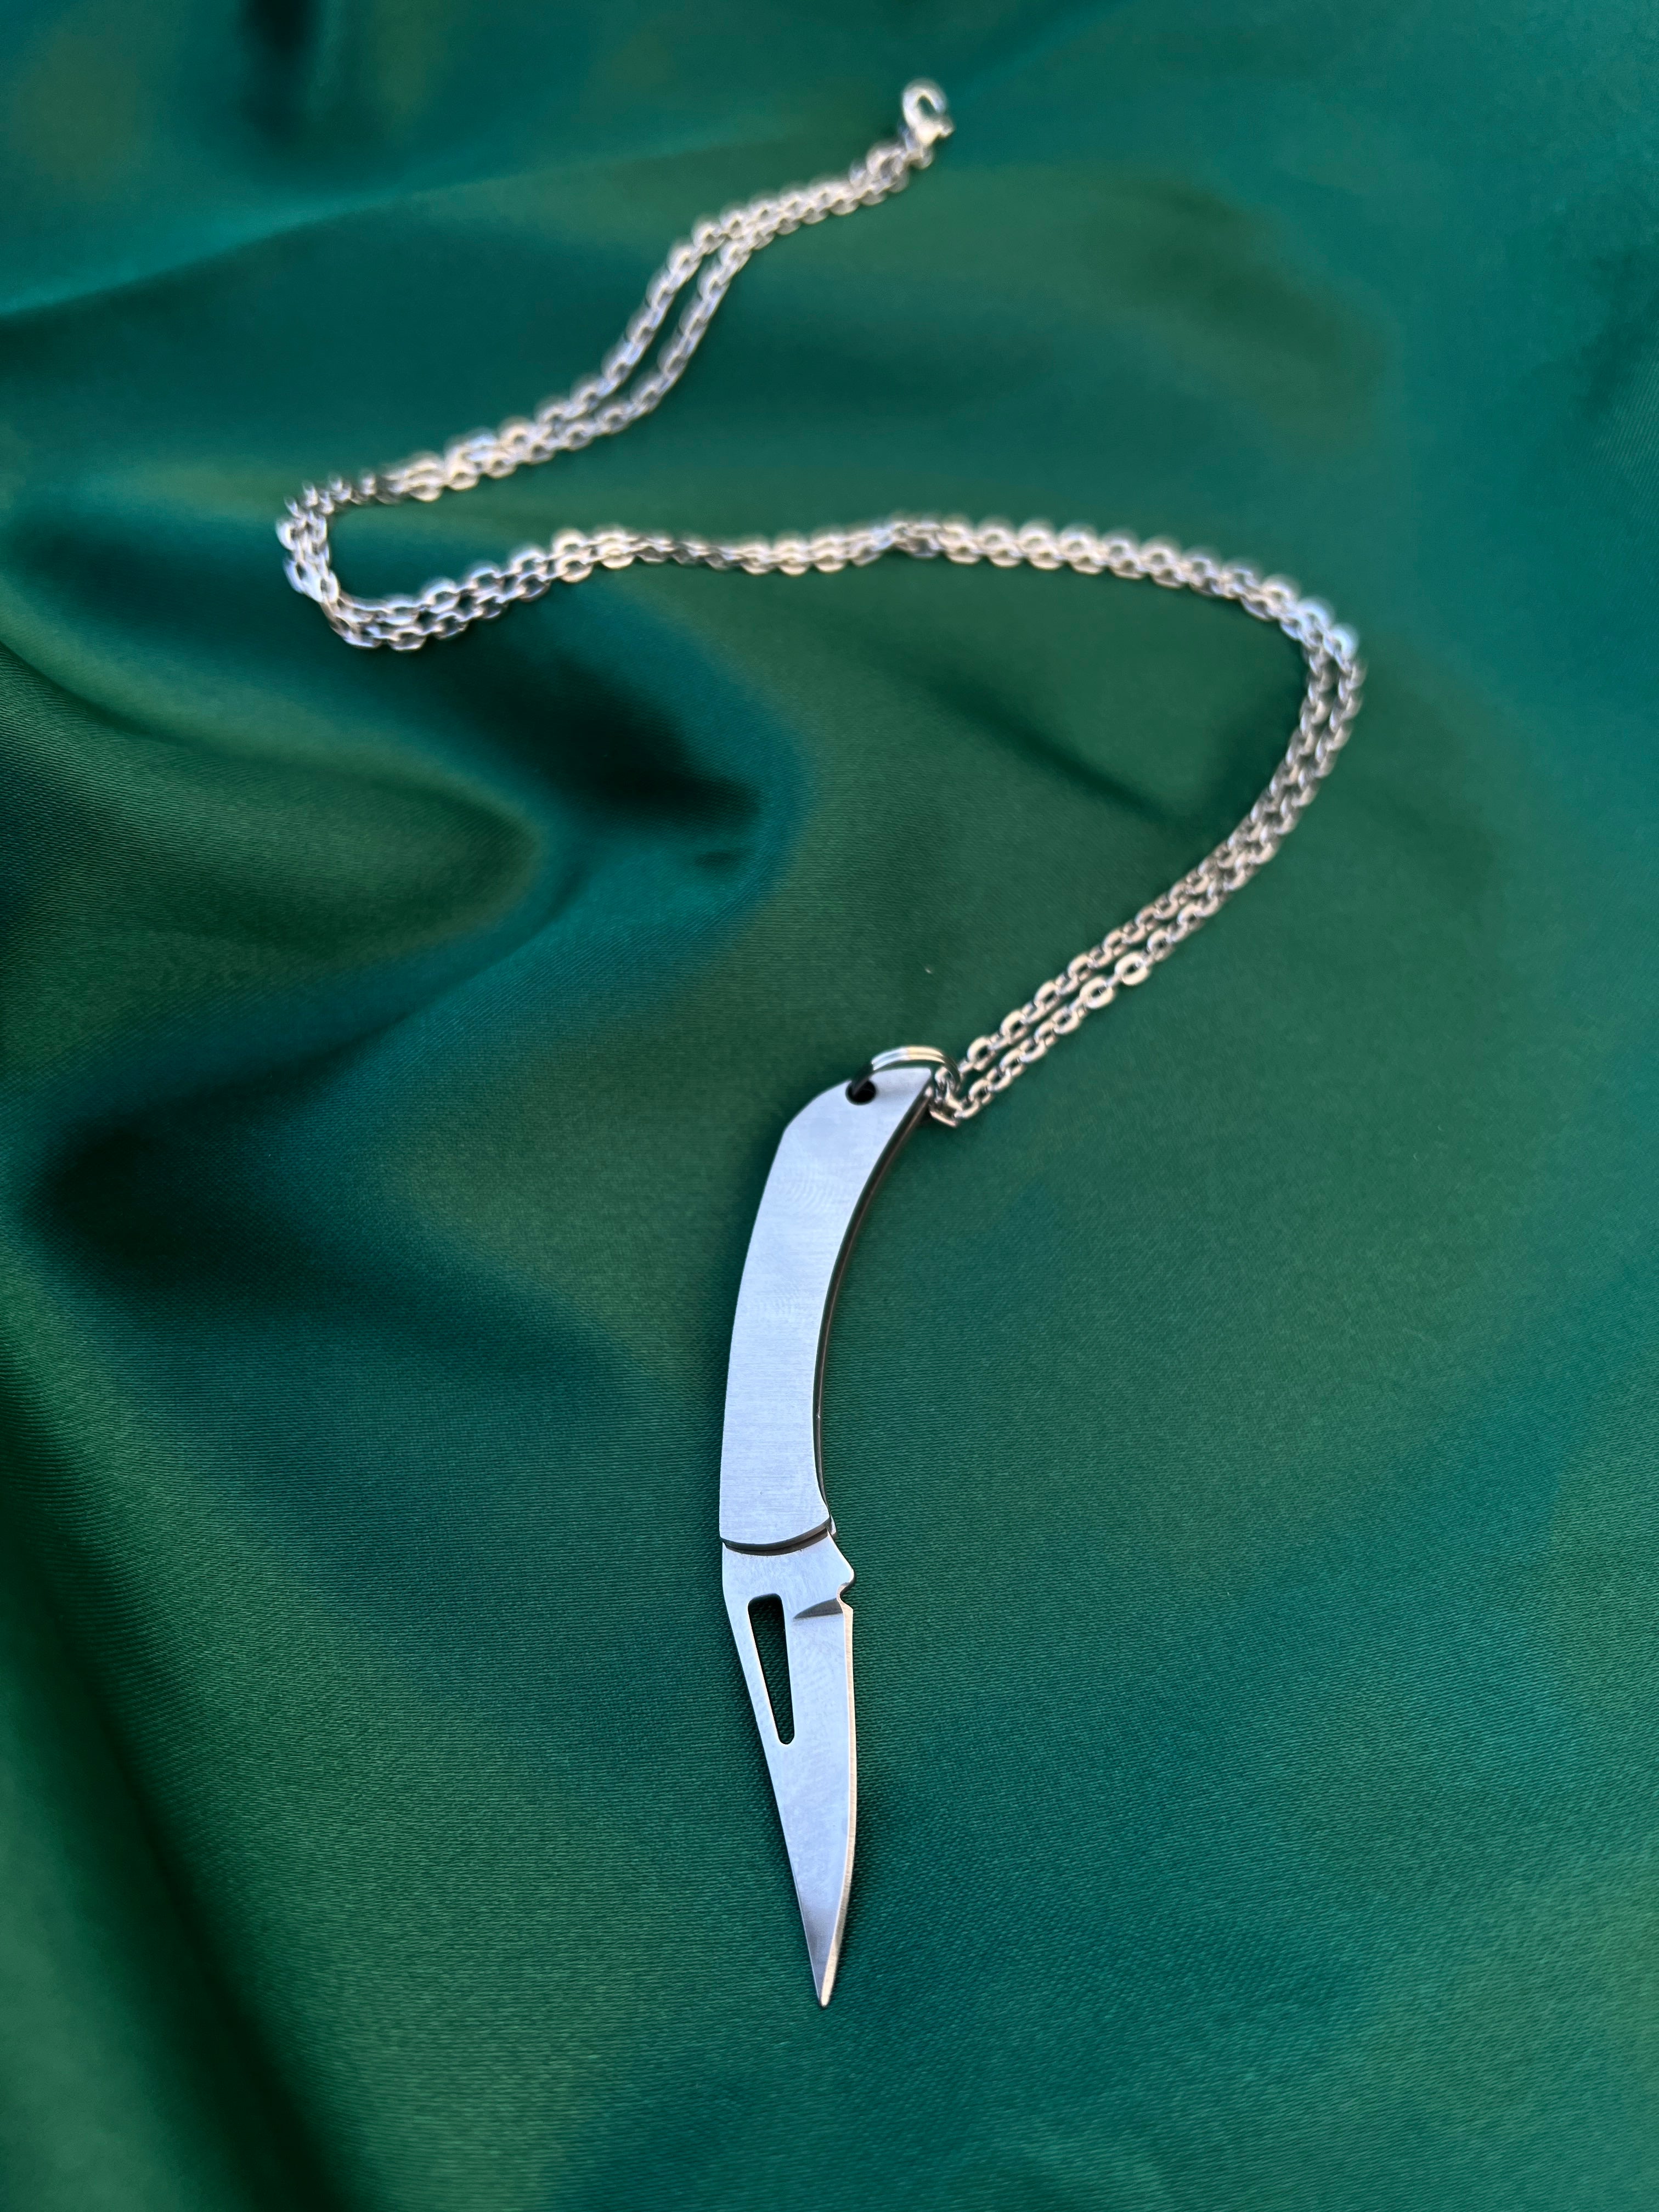 Secret Knife Necklace | TikTok